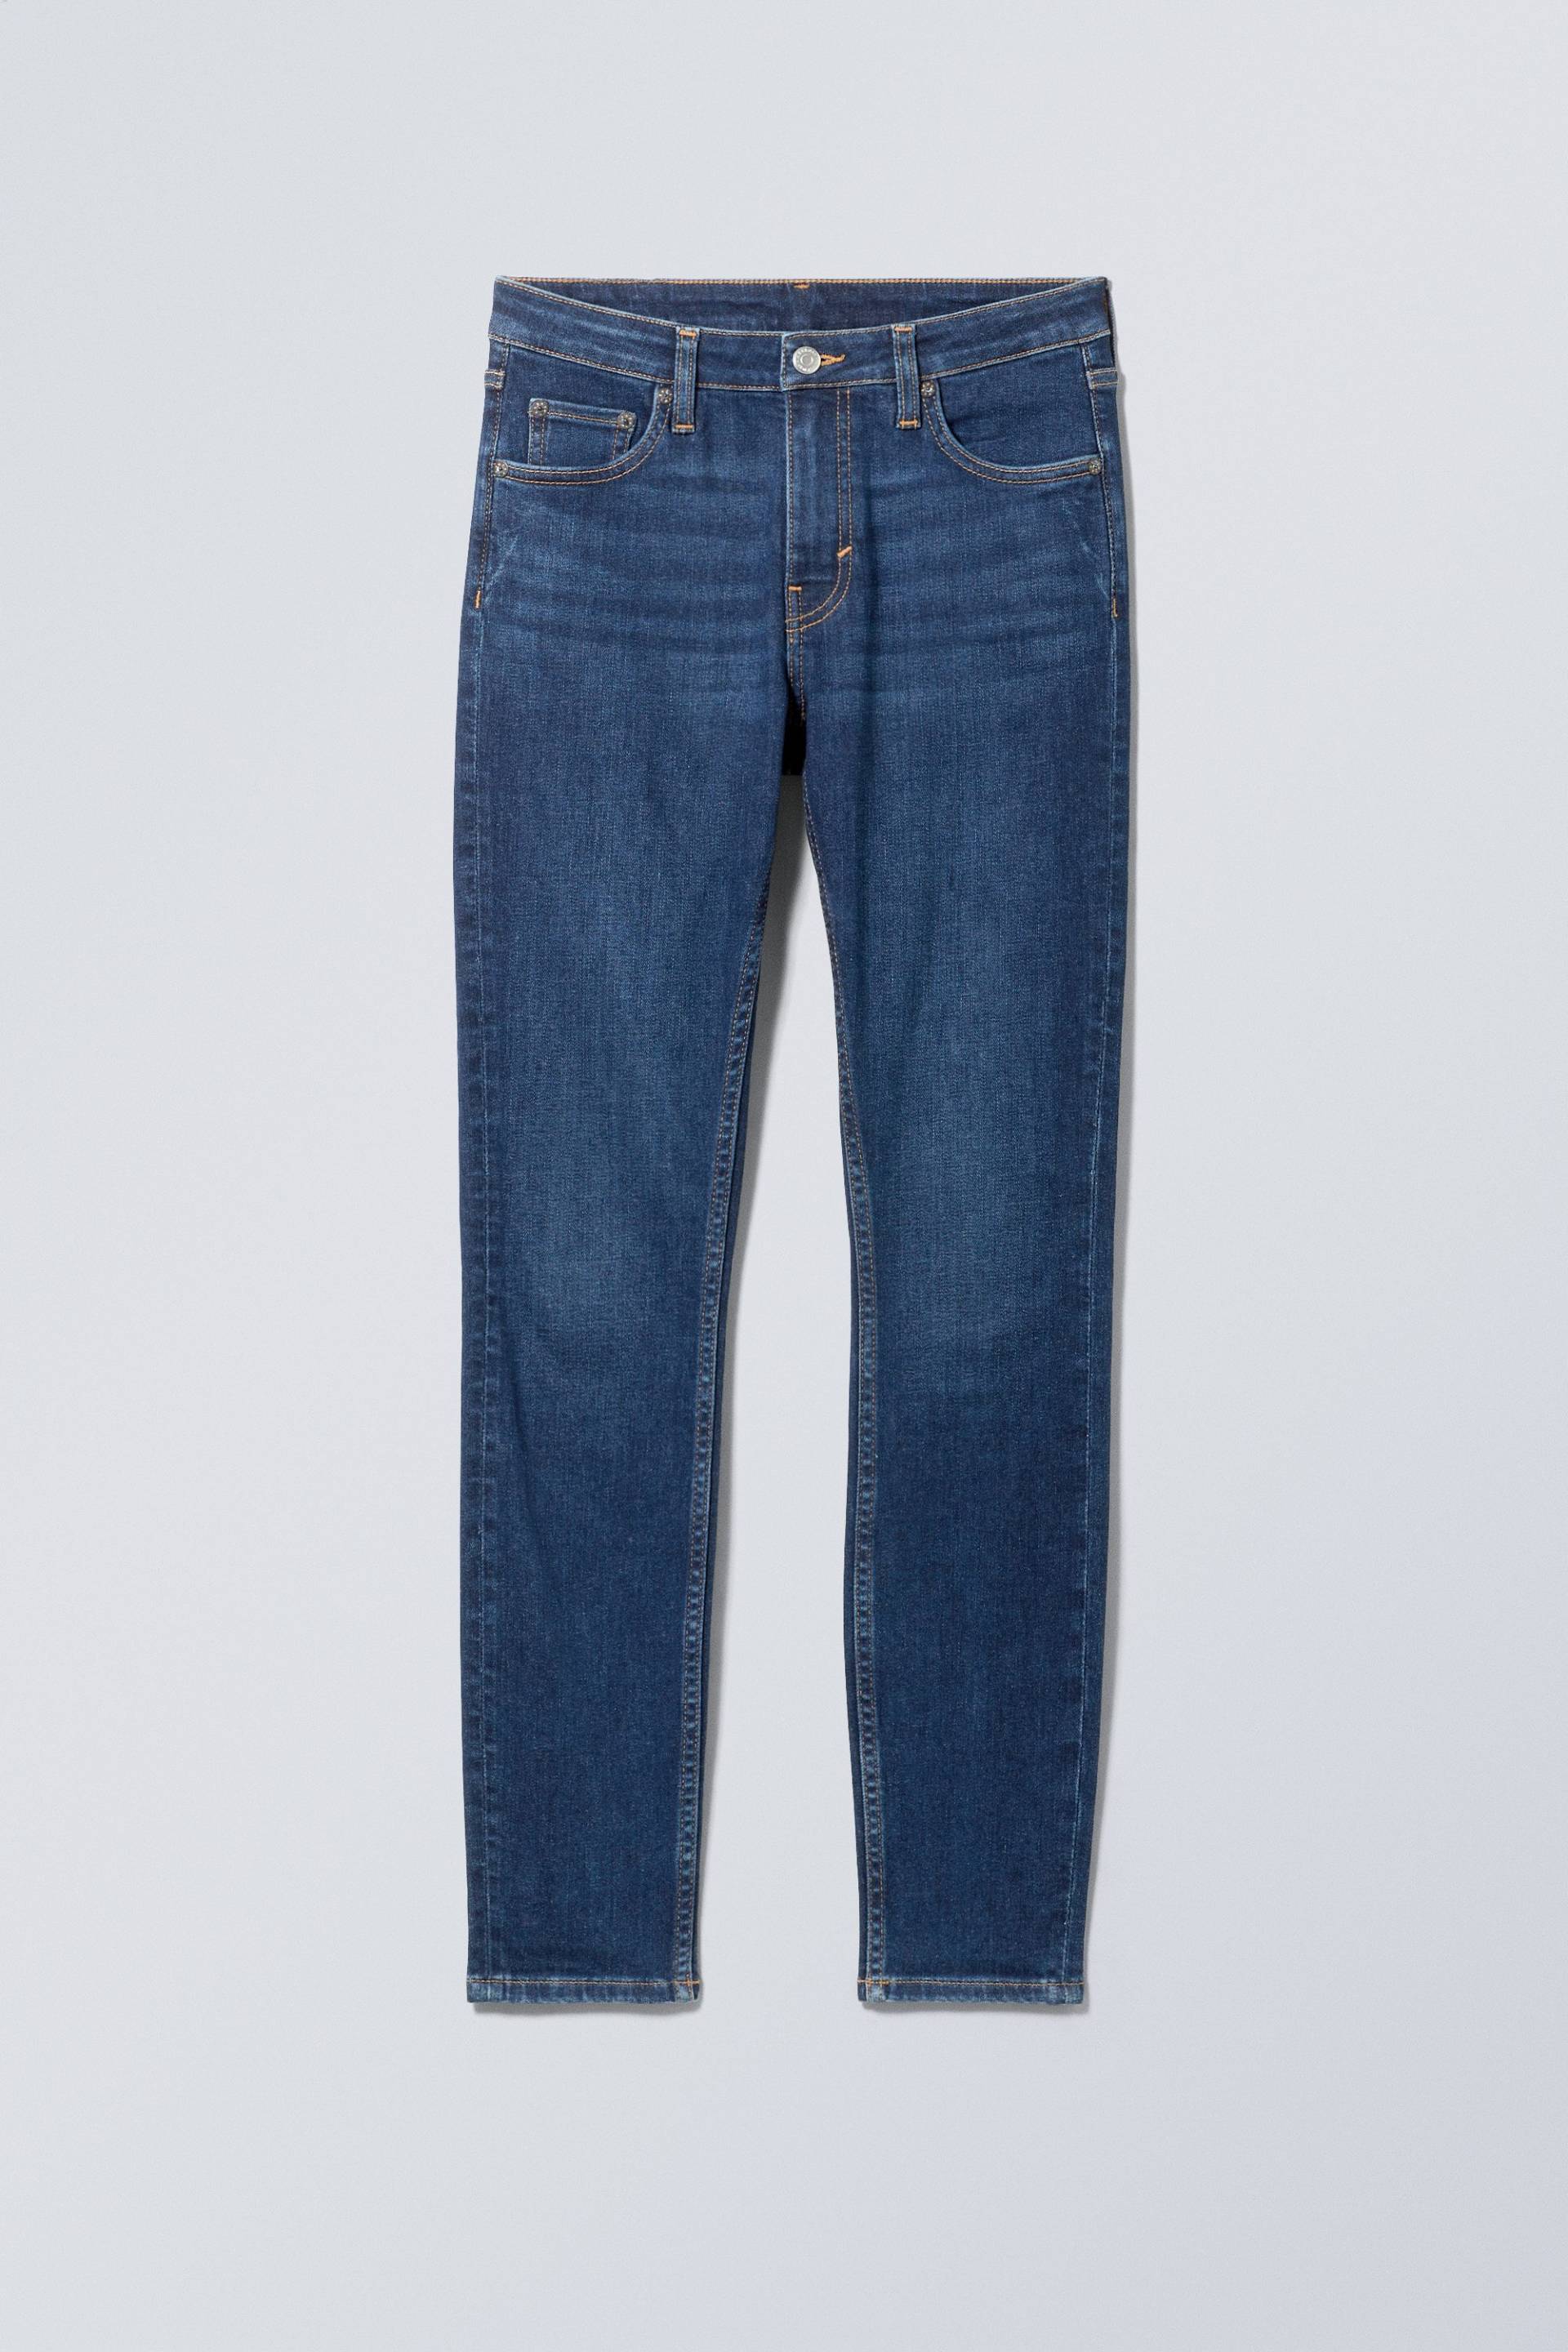 Weekday Skinny Jeans Spare mit mittelhohem Bund Mittelblau in Größe 26/30. Farbe: Mid blue von Weekday